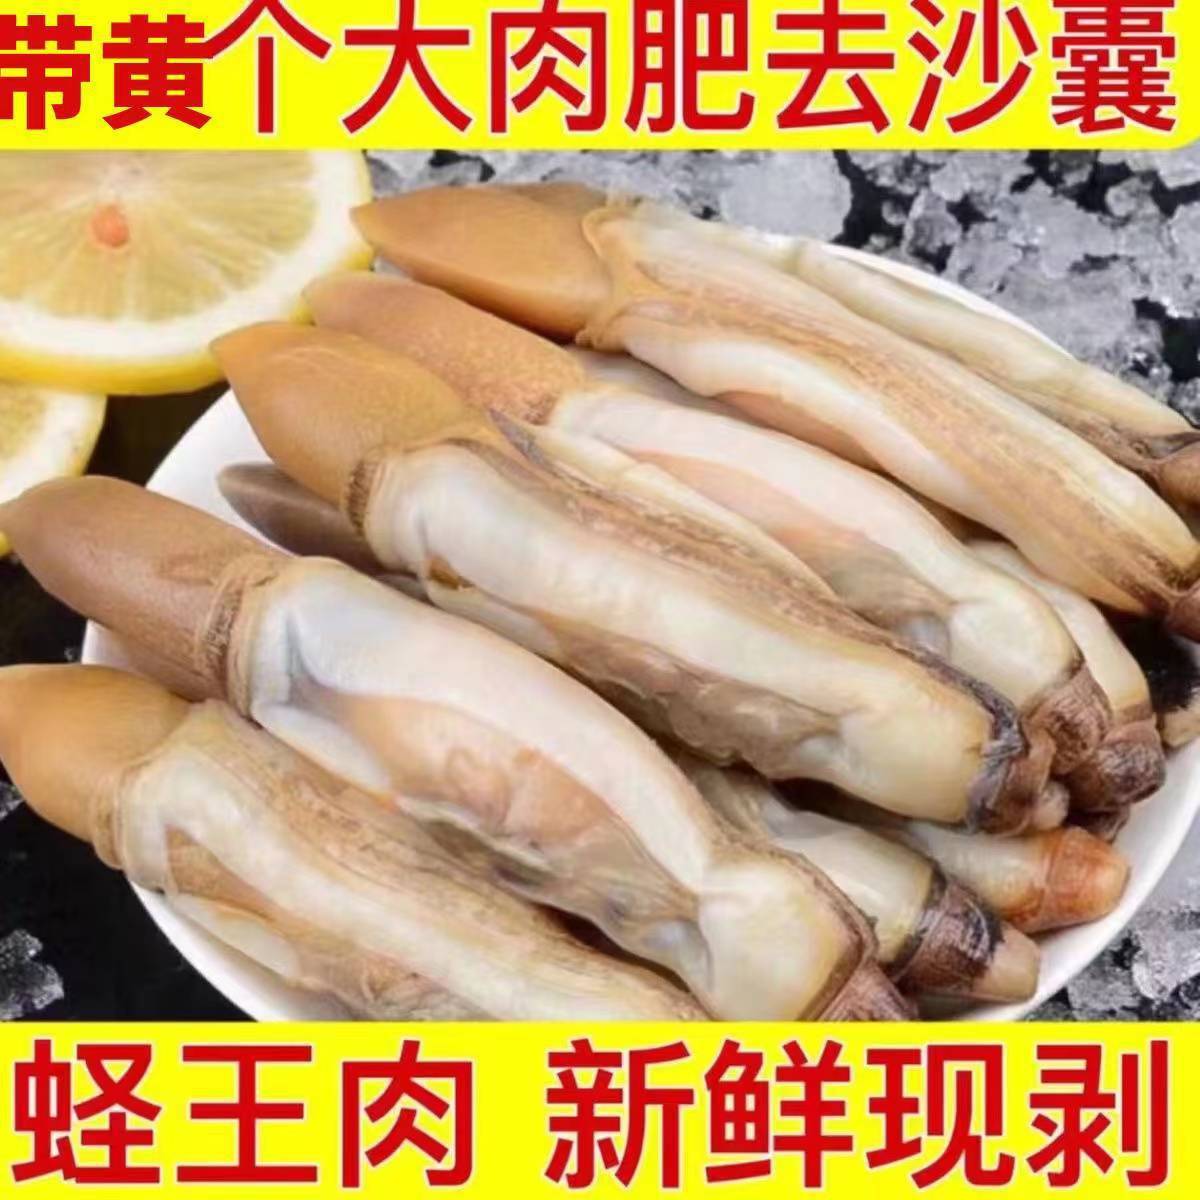 蛏王肉鲜活蛏子冷冻竹节蛏现剥海捕野生蛏子贝类海鲜水产批发商用